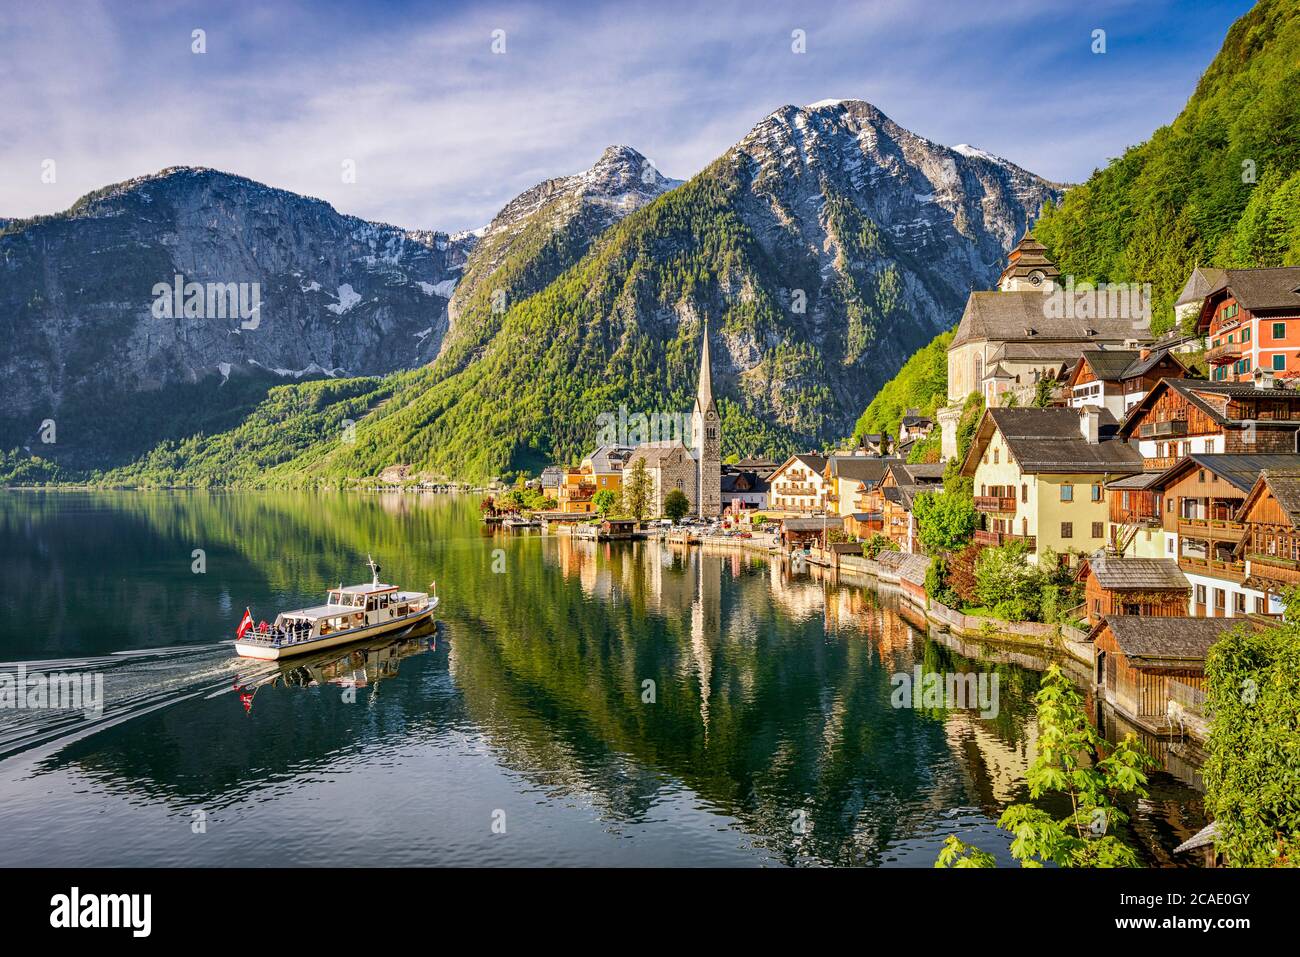 Famous mountain village Hallstatt in Austria Stock Photo